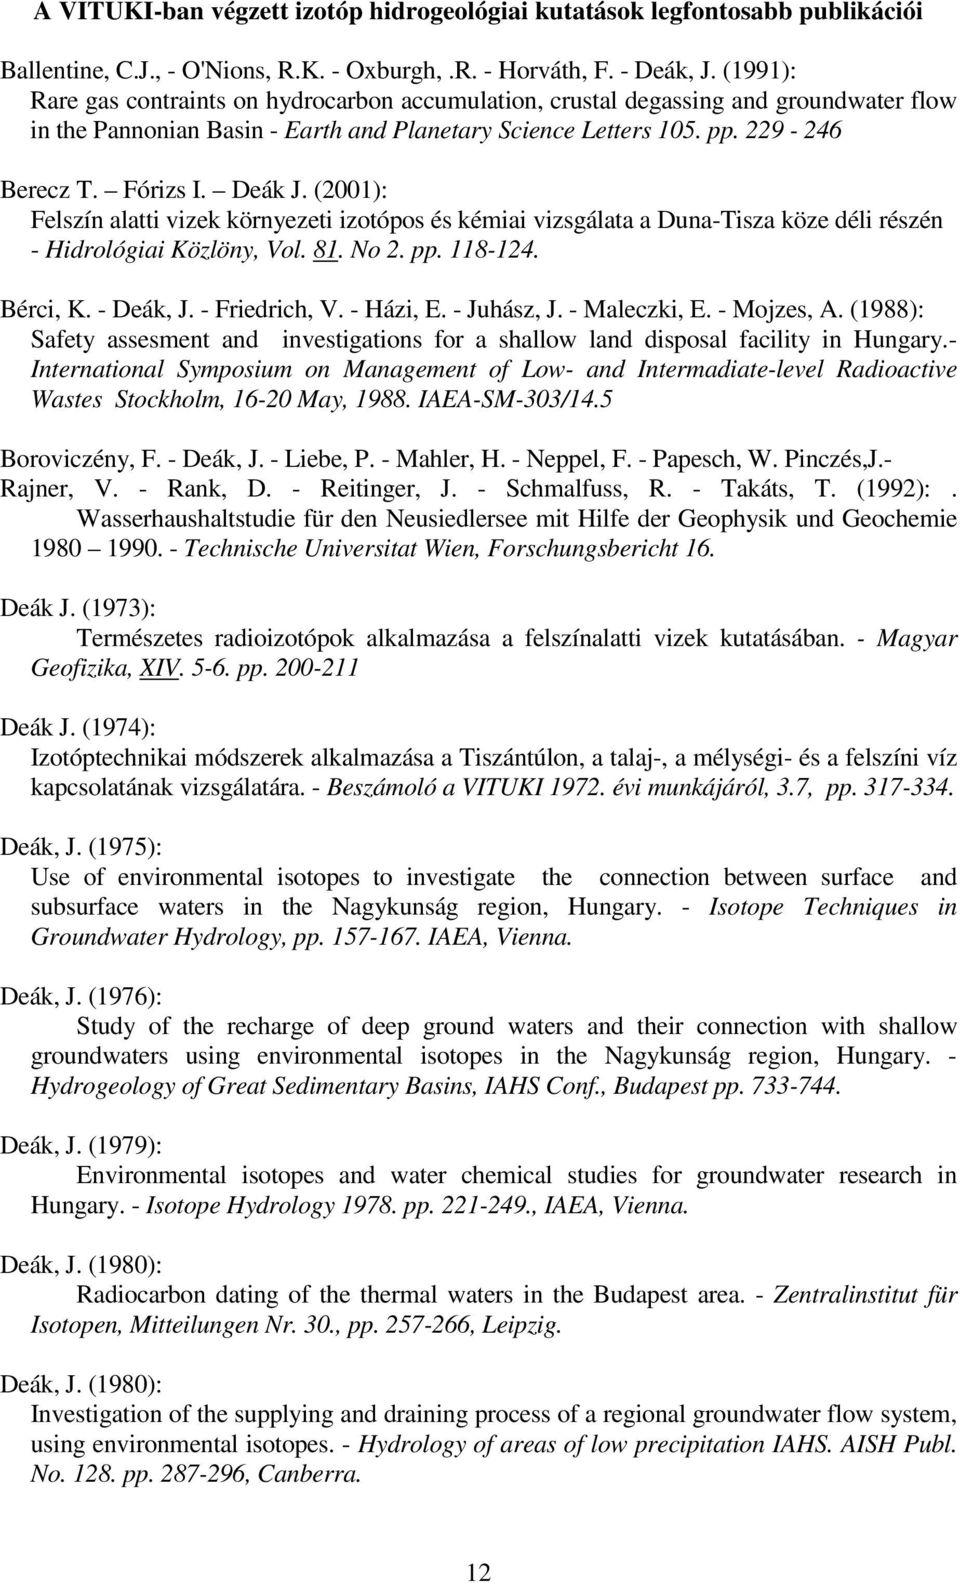 Deák J. (2001): Felszín alatti vizek környezeti izotópos és kémiai vizsgálata a Duna-Tisza köze déli részén - Hidrológiai Közlöny, Vol. 81. No 2. pp. 118-124. Bérci, K. - Deák, J. - Friedrich, V.